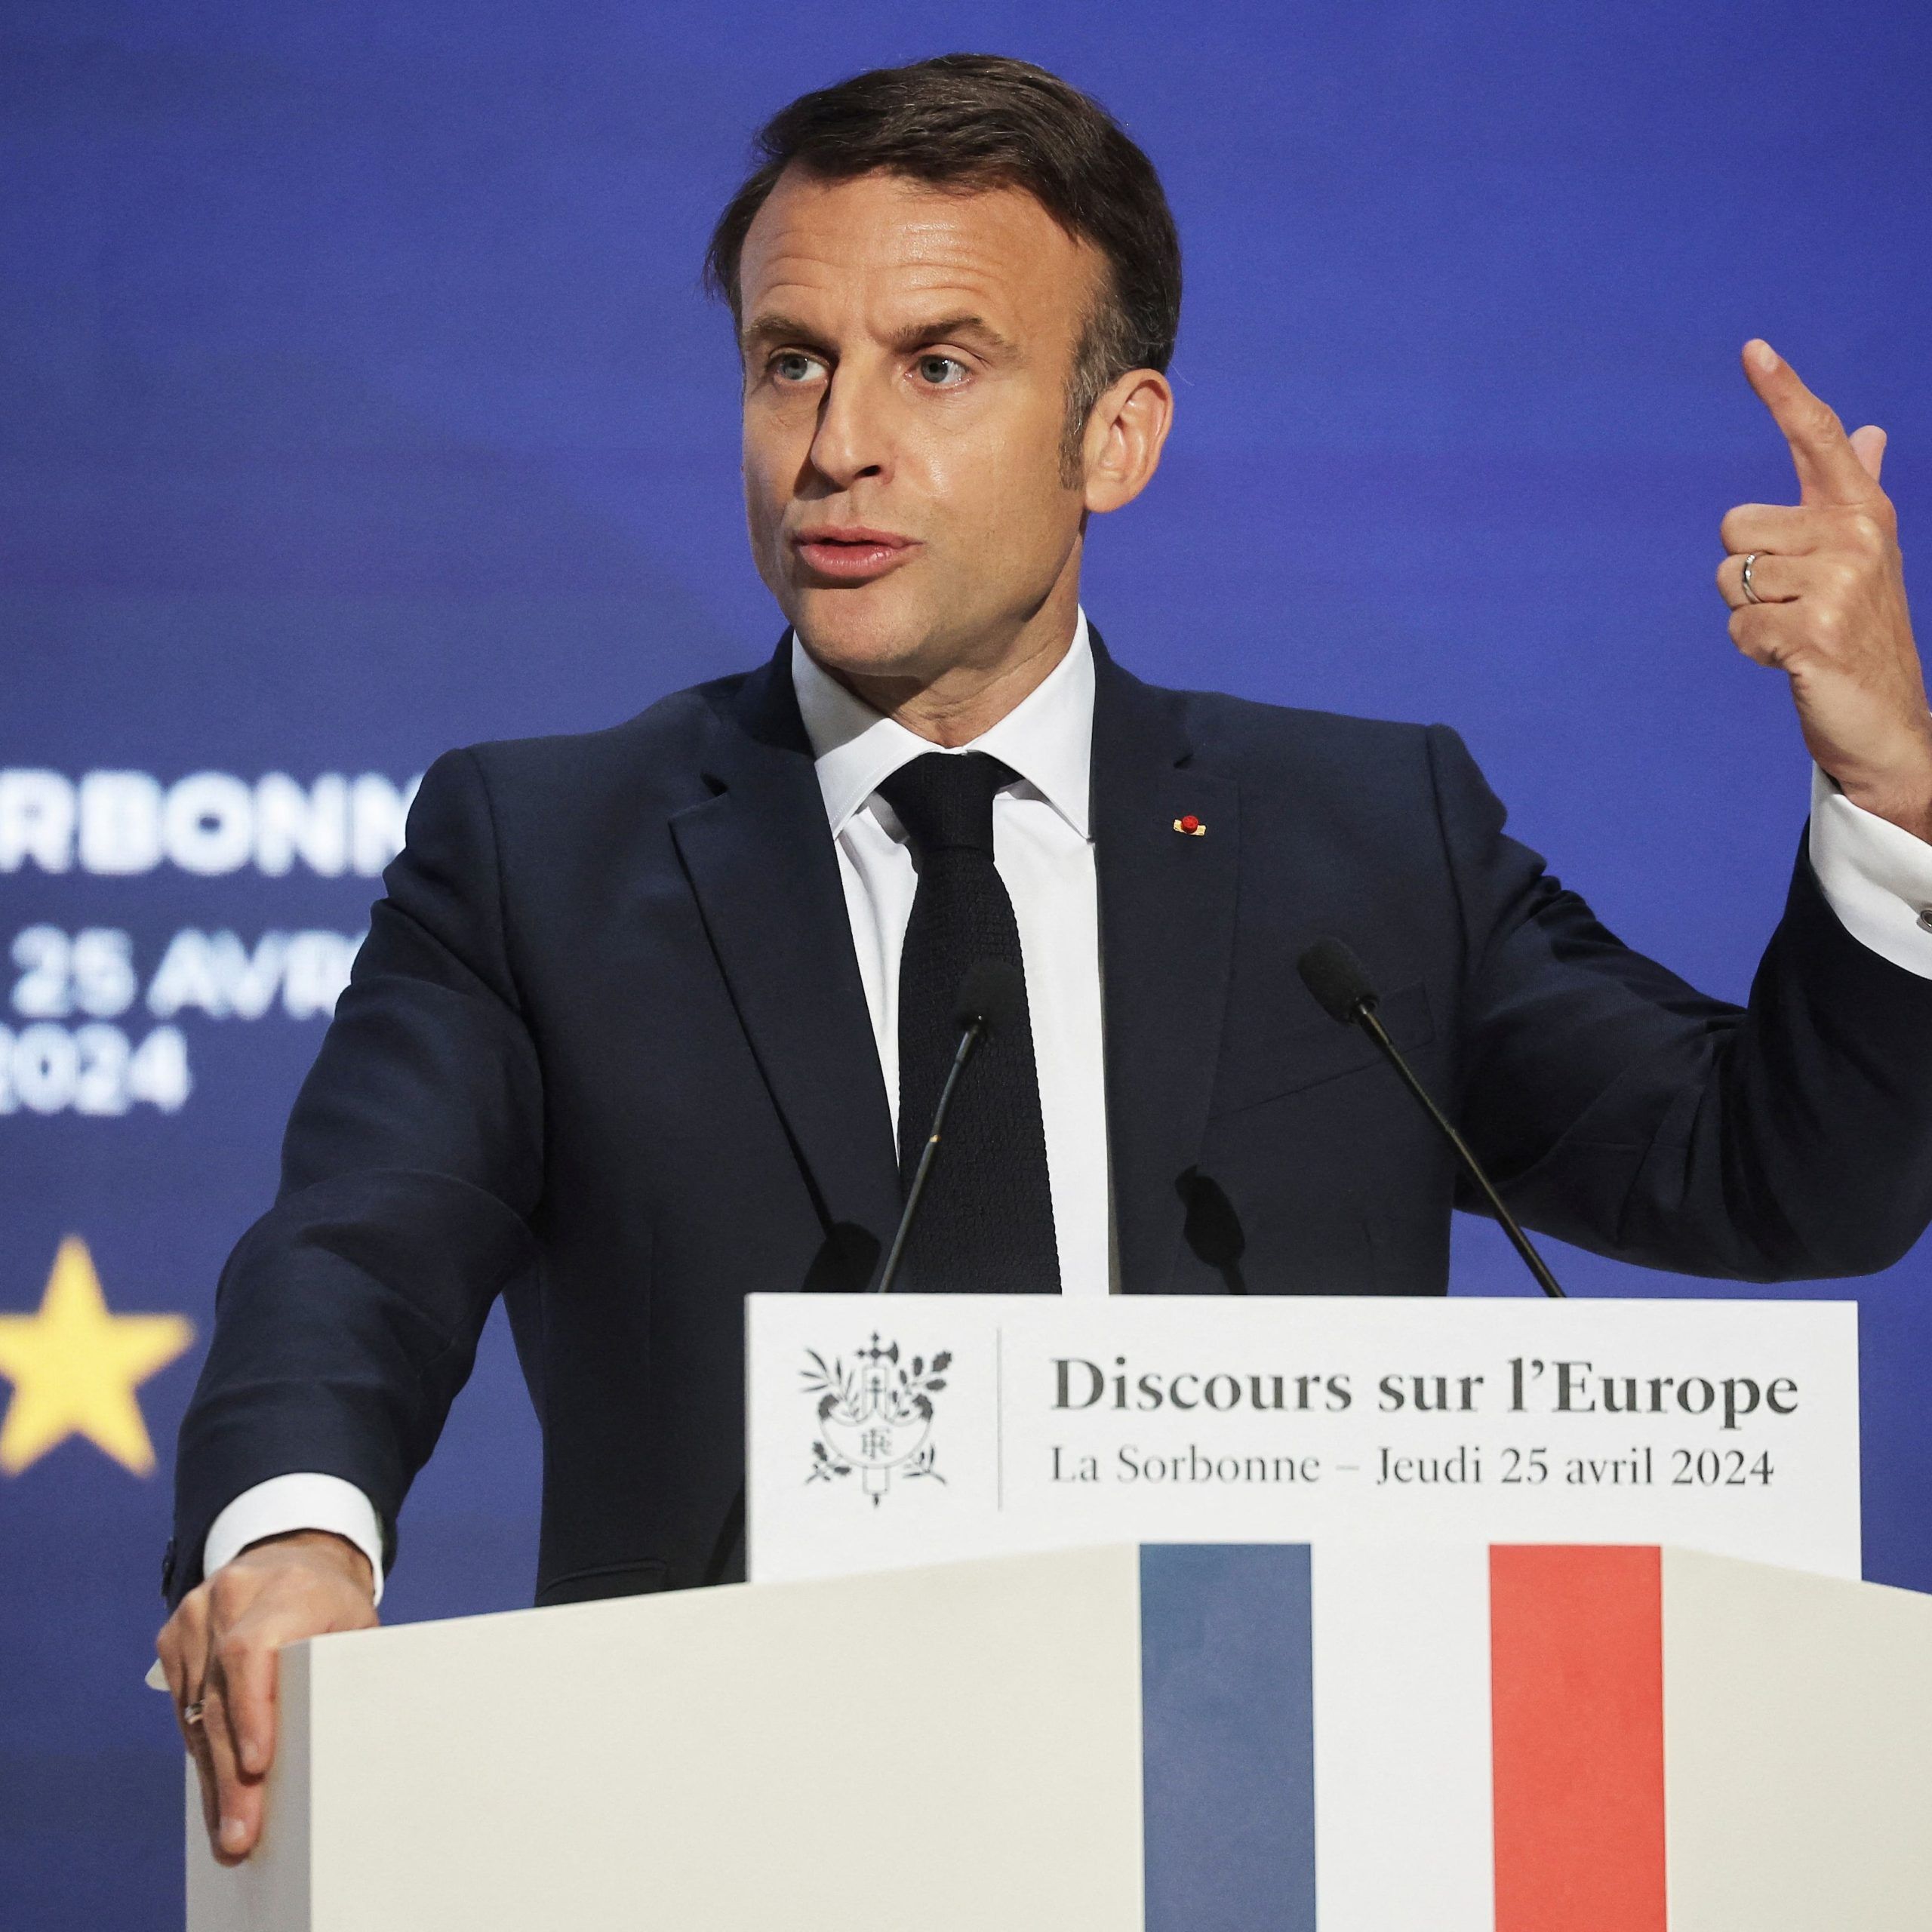 Macron llamó a los países de la Unión Europea a reforzar su soberanía con una “defensa creíble”